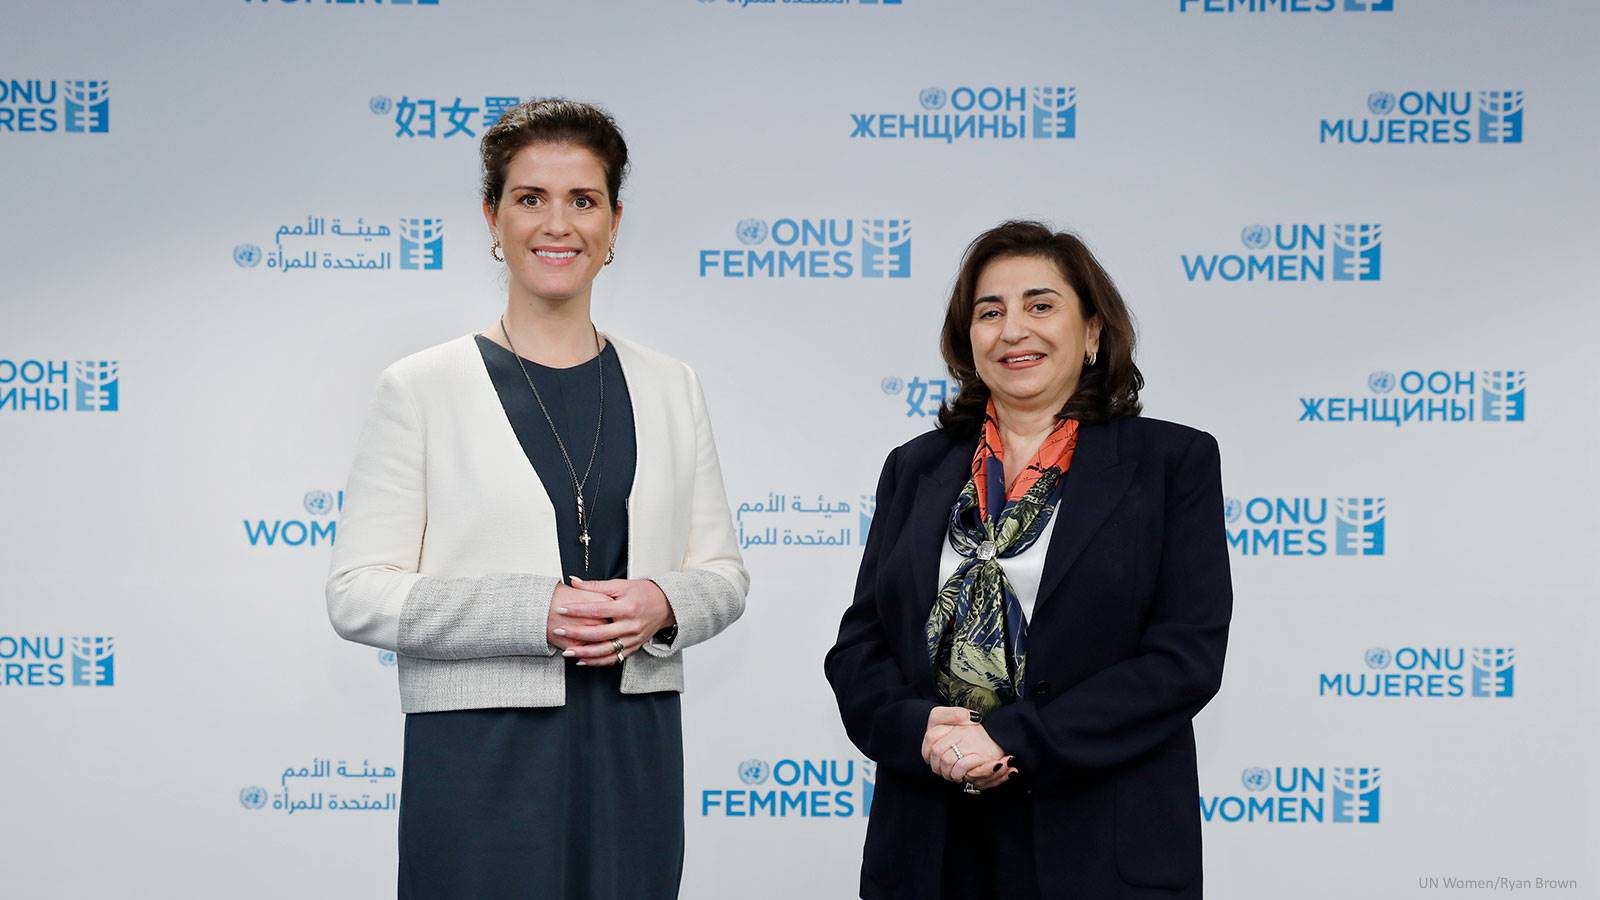 Minister Gylfadóttir and Sima Sami Bahous, Executive Director of UN Women - mynd